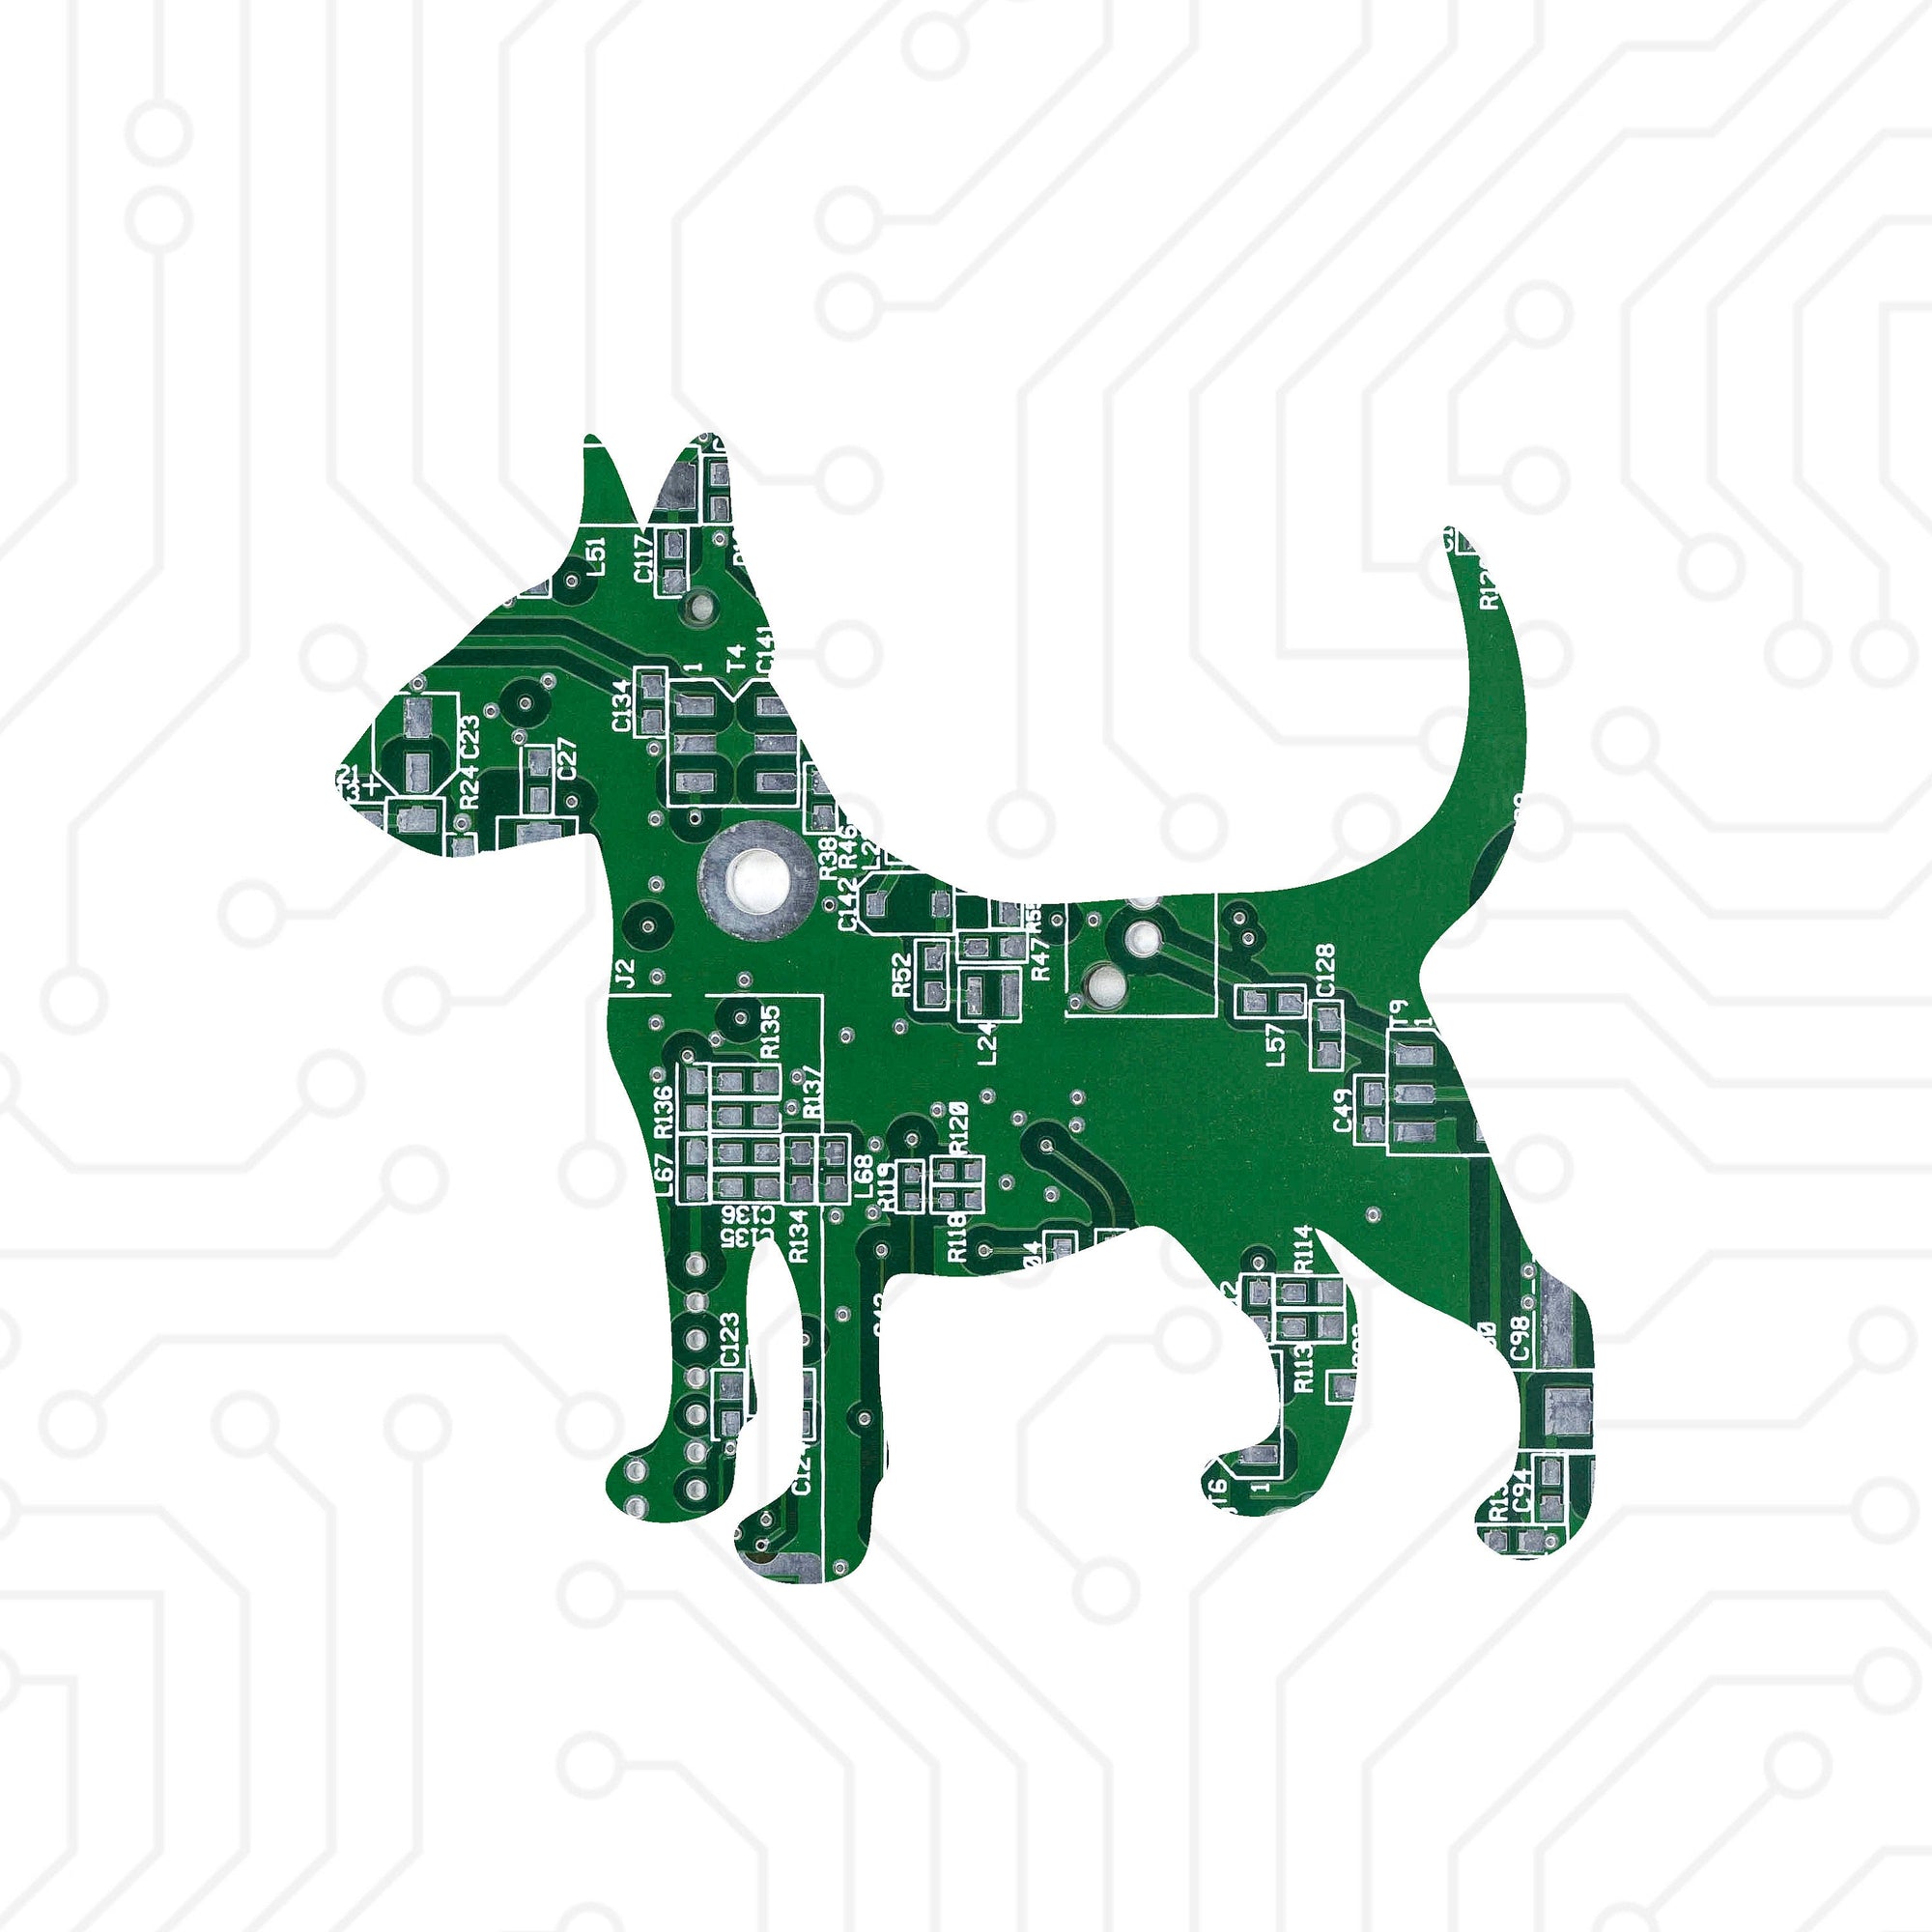 Bull Terrier - TechWears Ltd